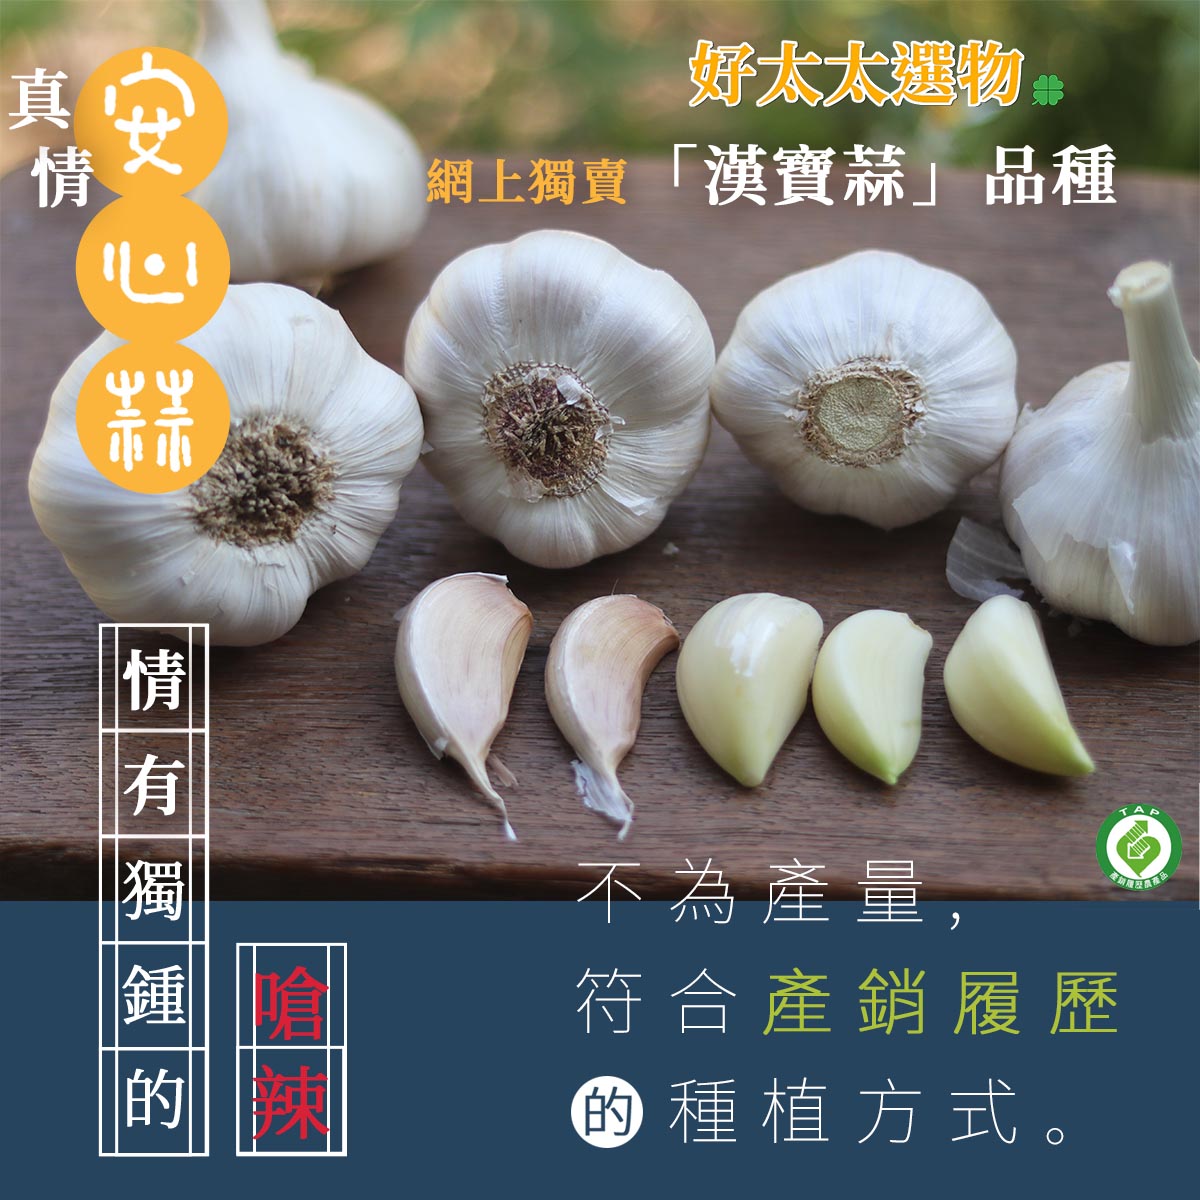 通過「產銷履歷」認證100%保證台灣雲林元長種植「漢寶蒜」。